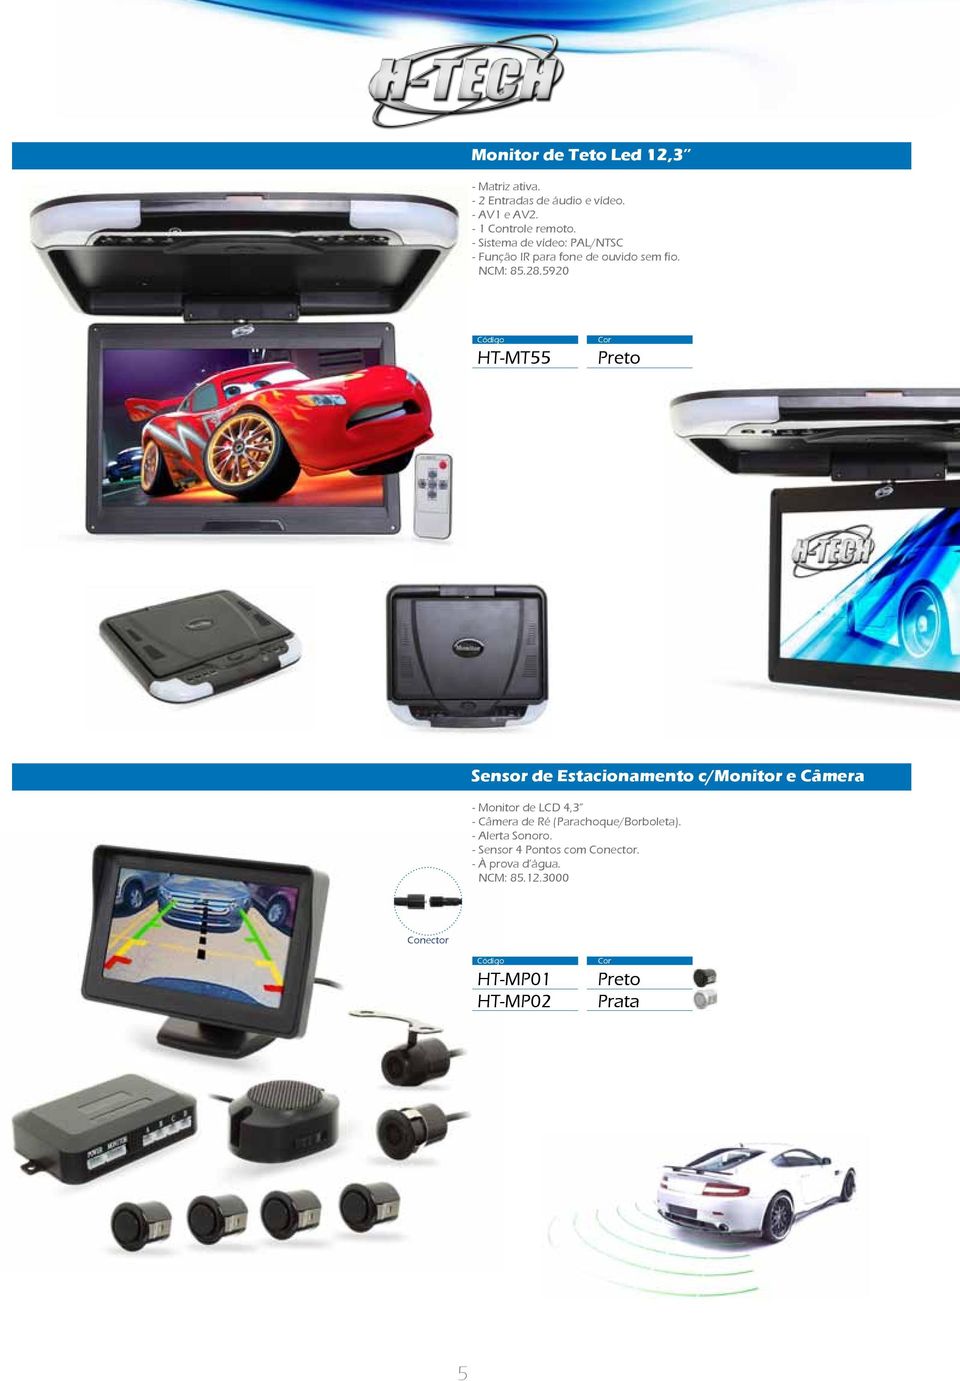 - Sistema de vídeo: PAL/NTSC HT-MT55 Sensor de Estacionamento c/monitor e